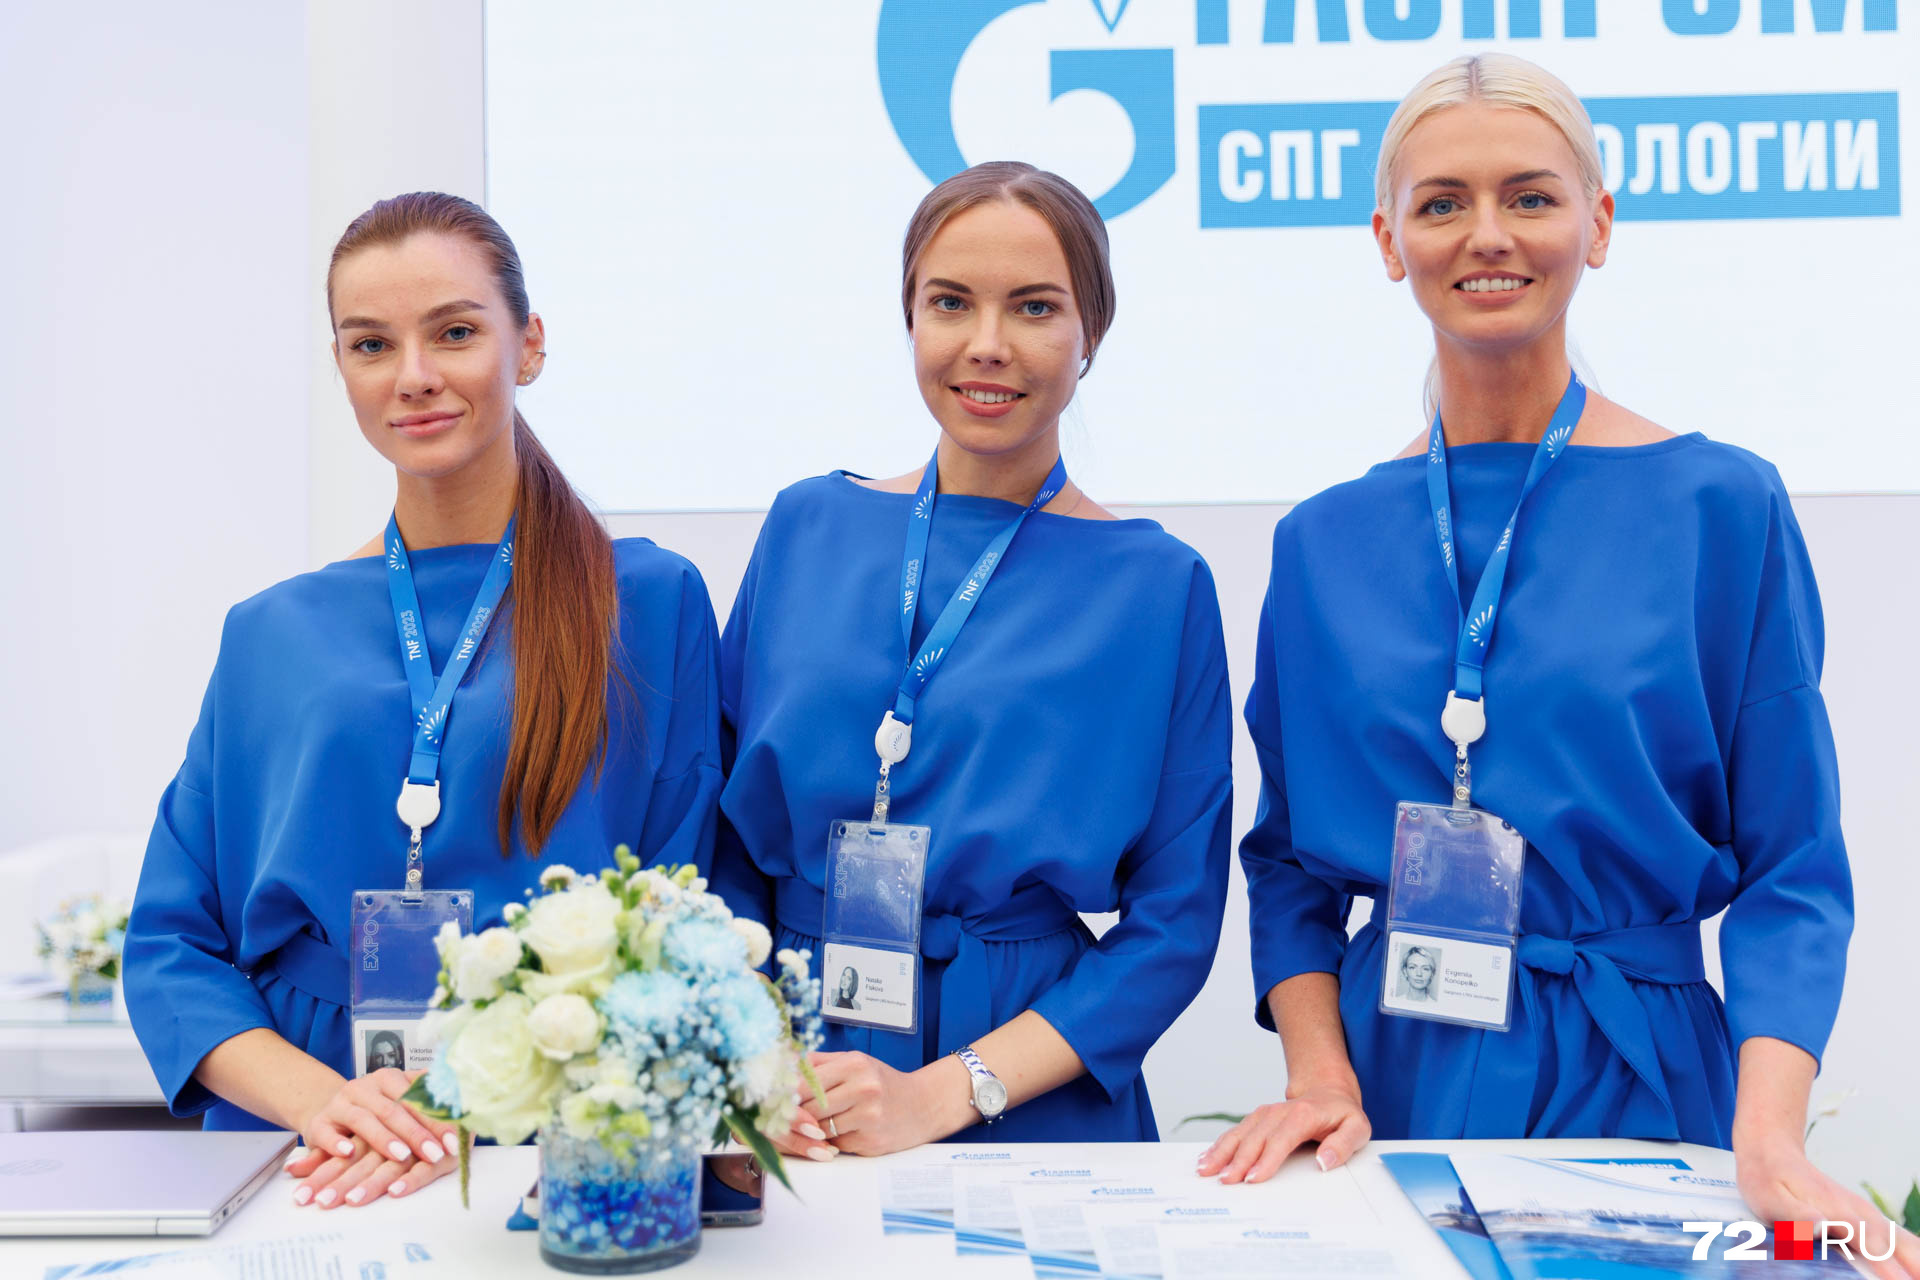 Кажется, «Газпрому» крупно повезло: глядите, какие красавицы представляют их стенд на выставке форума